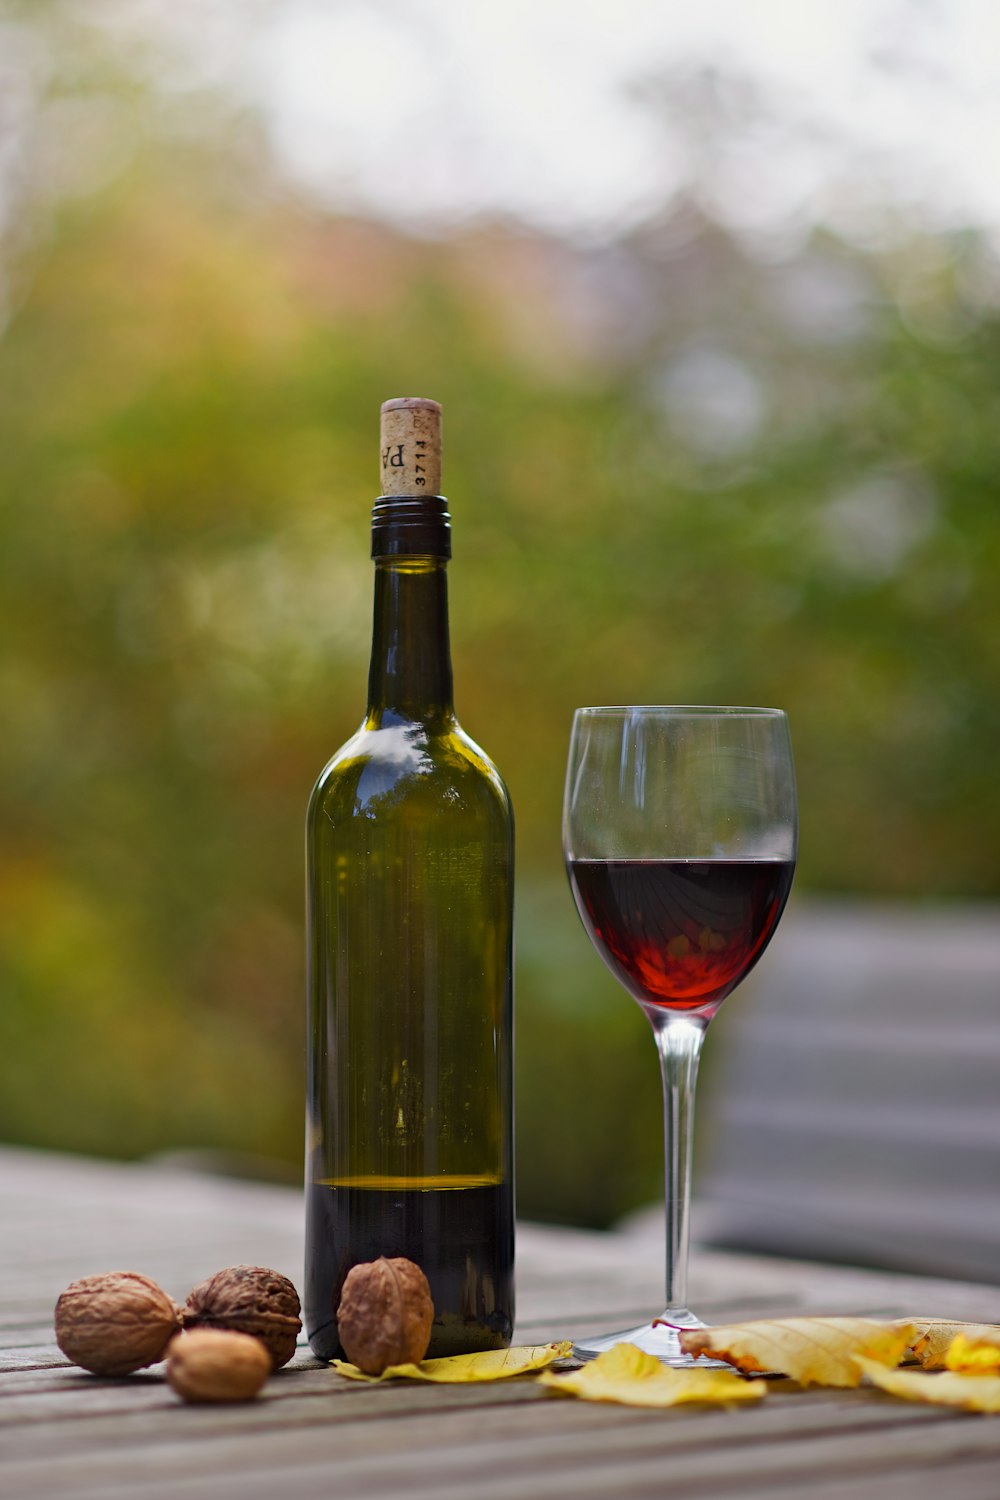 botella de vino junto a la copa de vino sobre una superficie de madera marrón